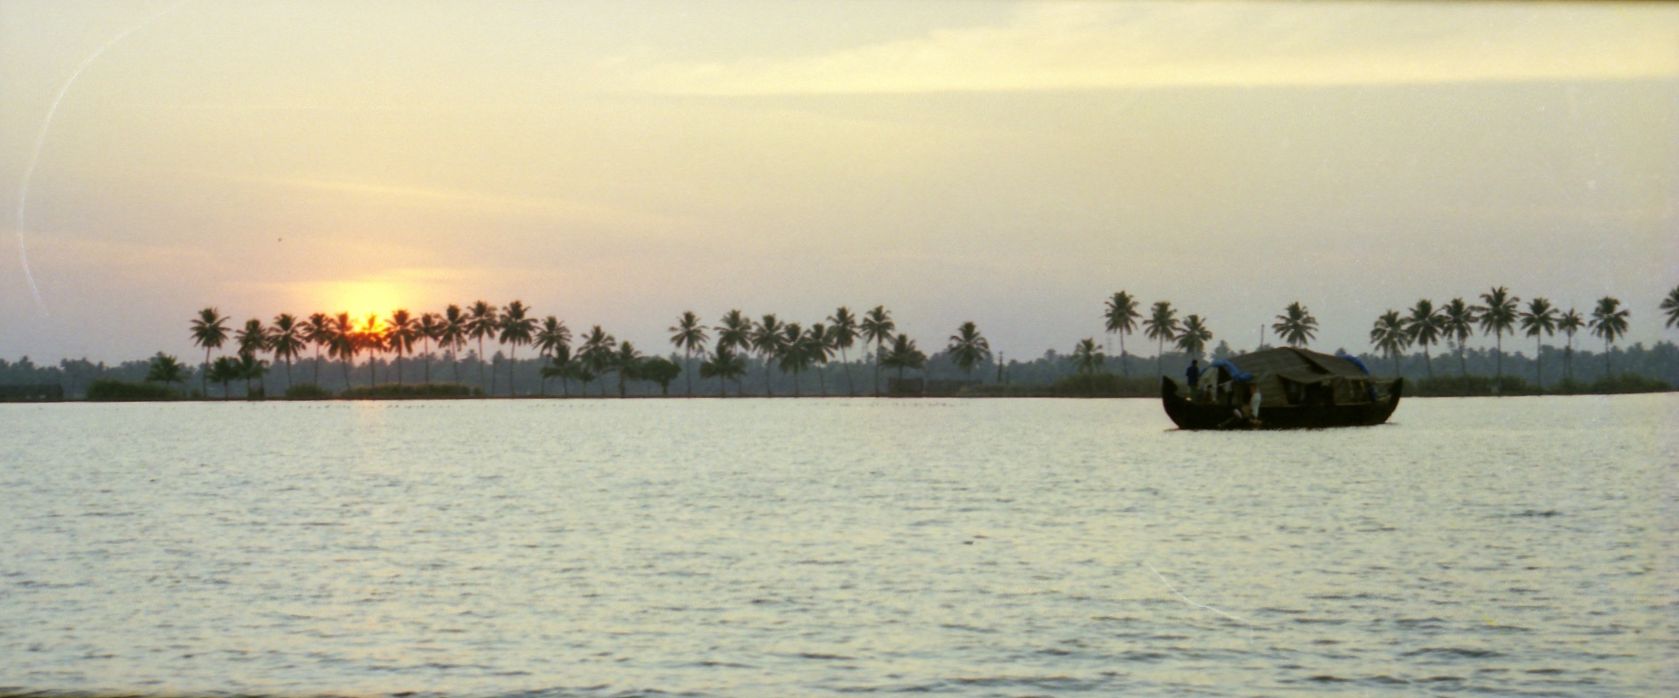 20000200-India-Kerala-Backwaters-sunset-AU301-32tr-pan.jpg